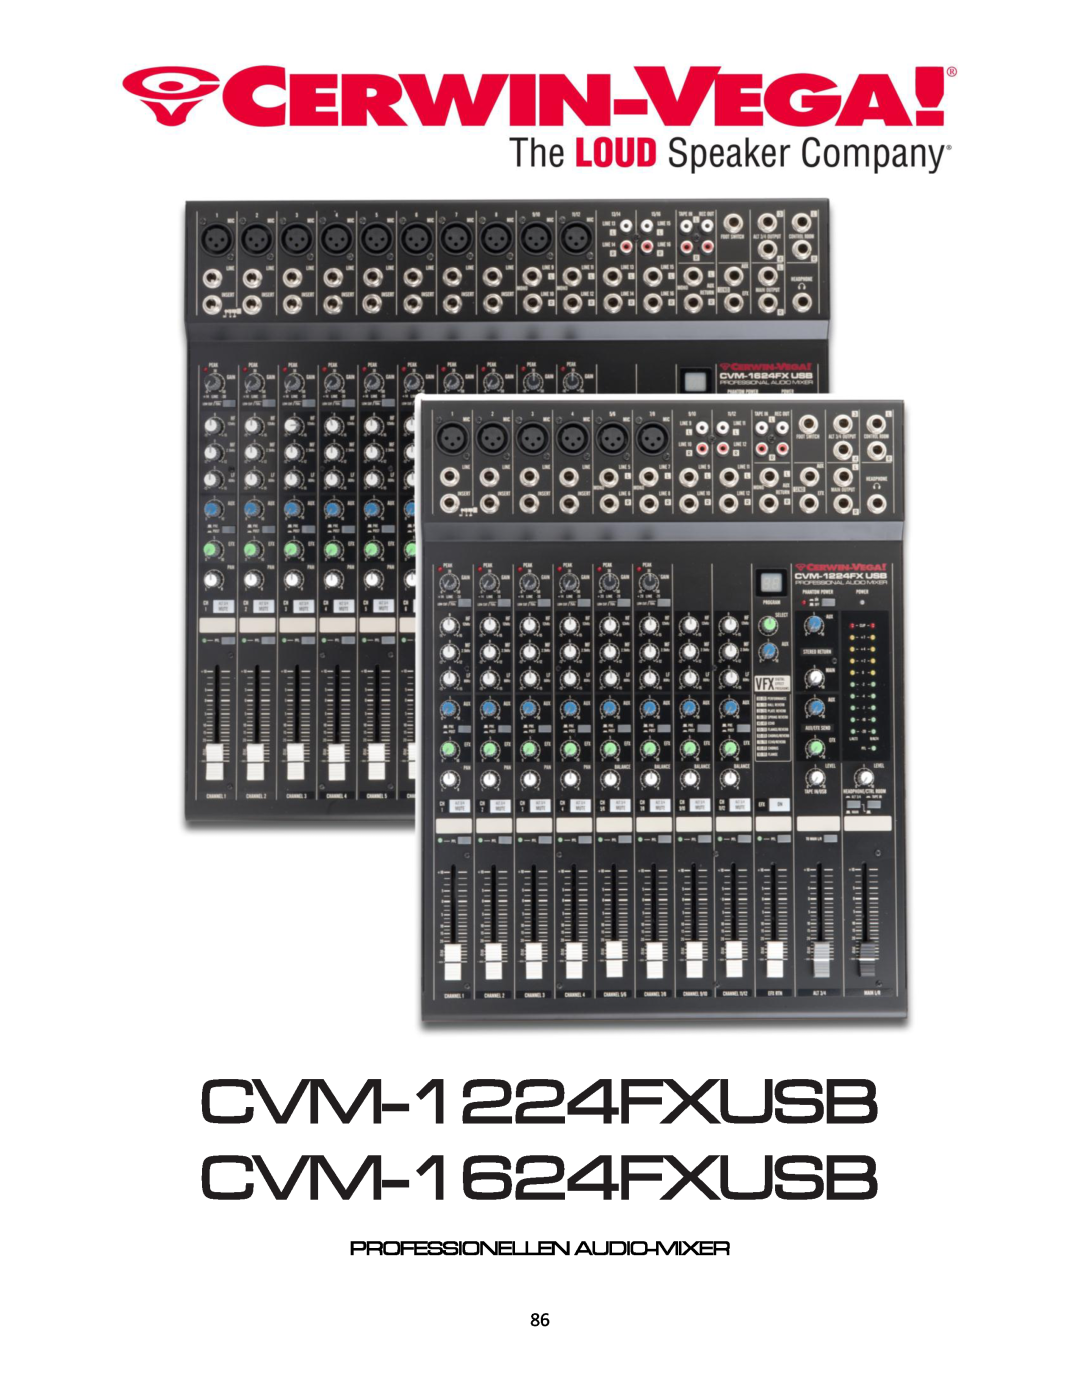 Cerwin-Vega manual Professionellen Audio-Mixer, CVM-1224FXUSB CVM-1624FXUSB 